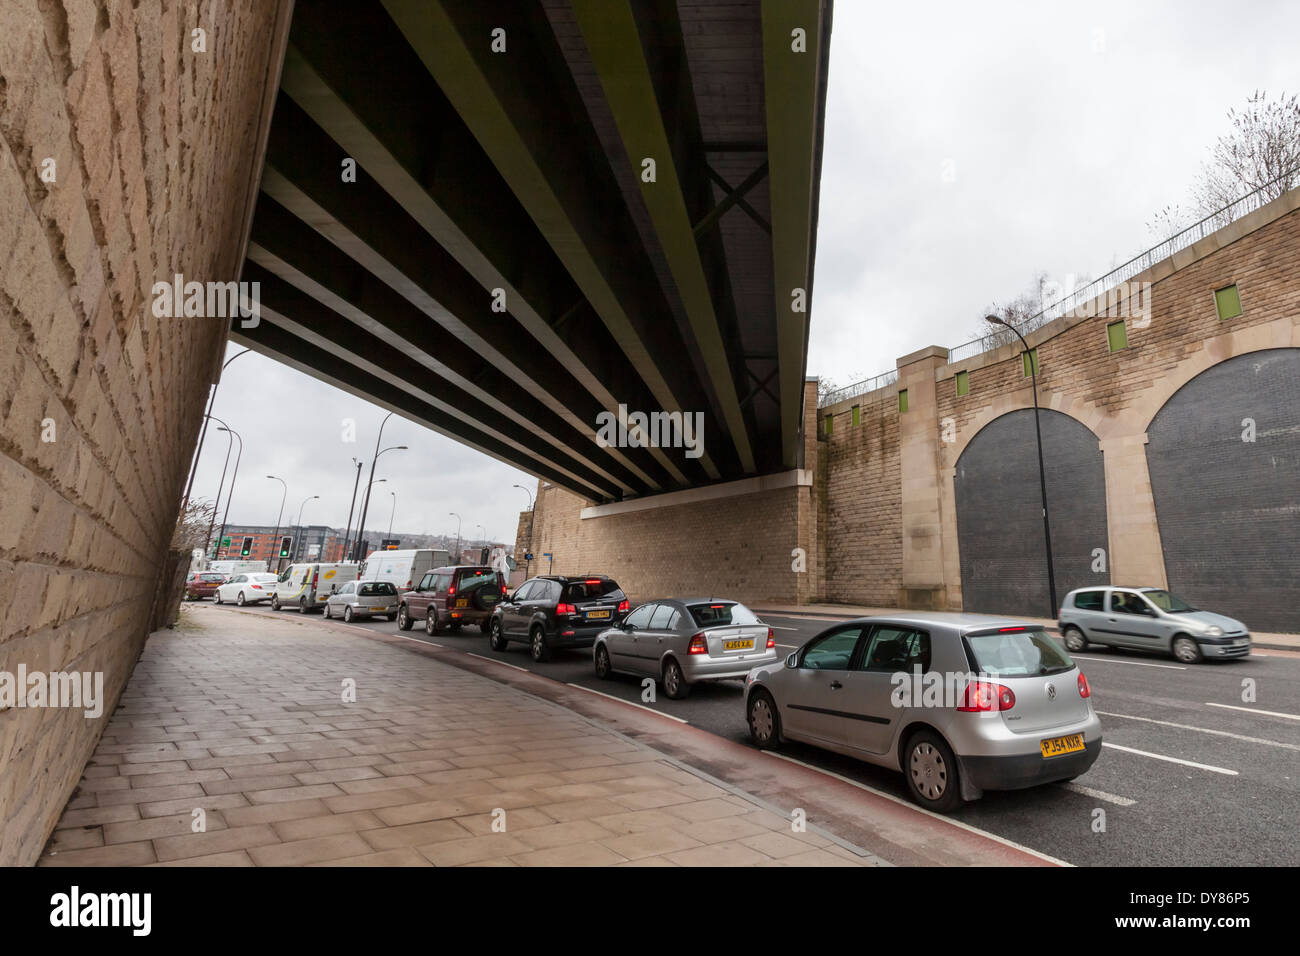 Queueing Verkehr auf einer Straße unter einer Brücke, Sheffield, England, UK Stockfoto